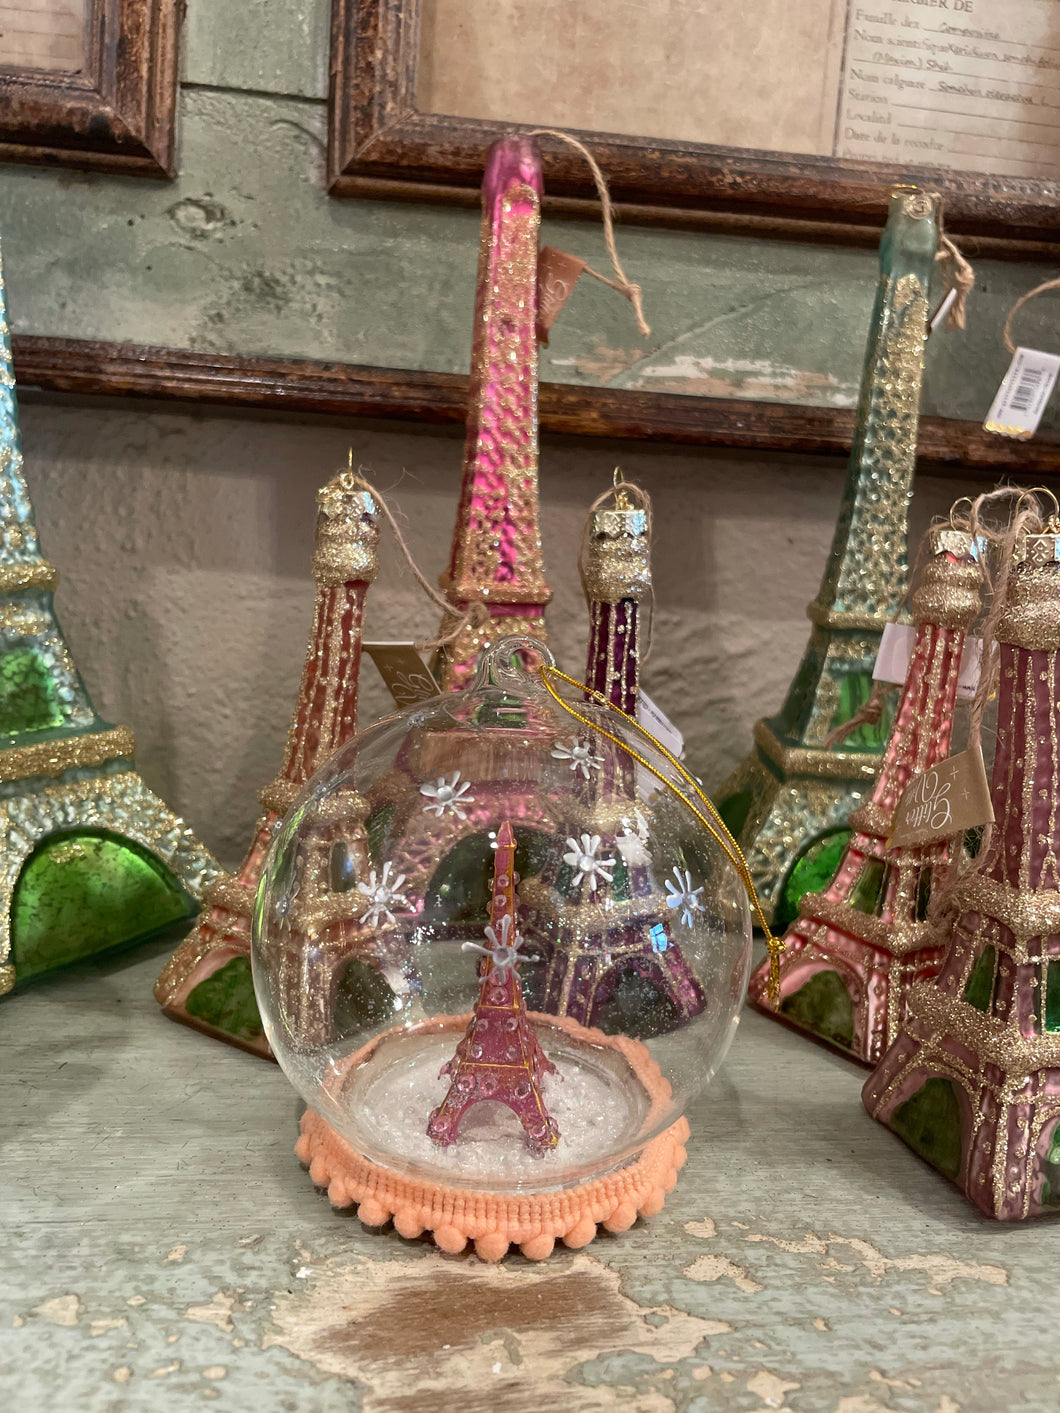 Parisian ornaments